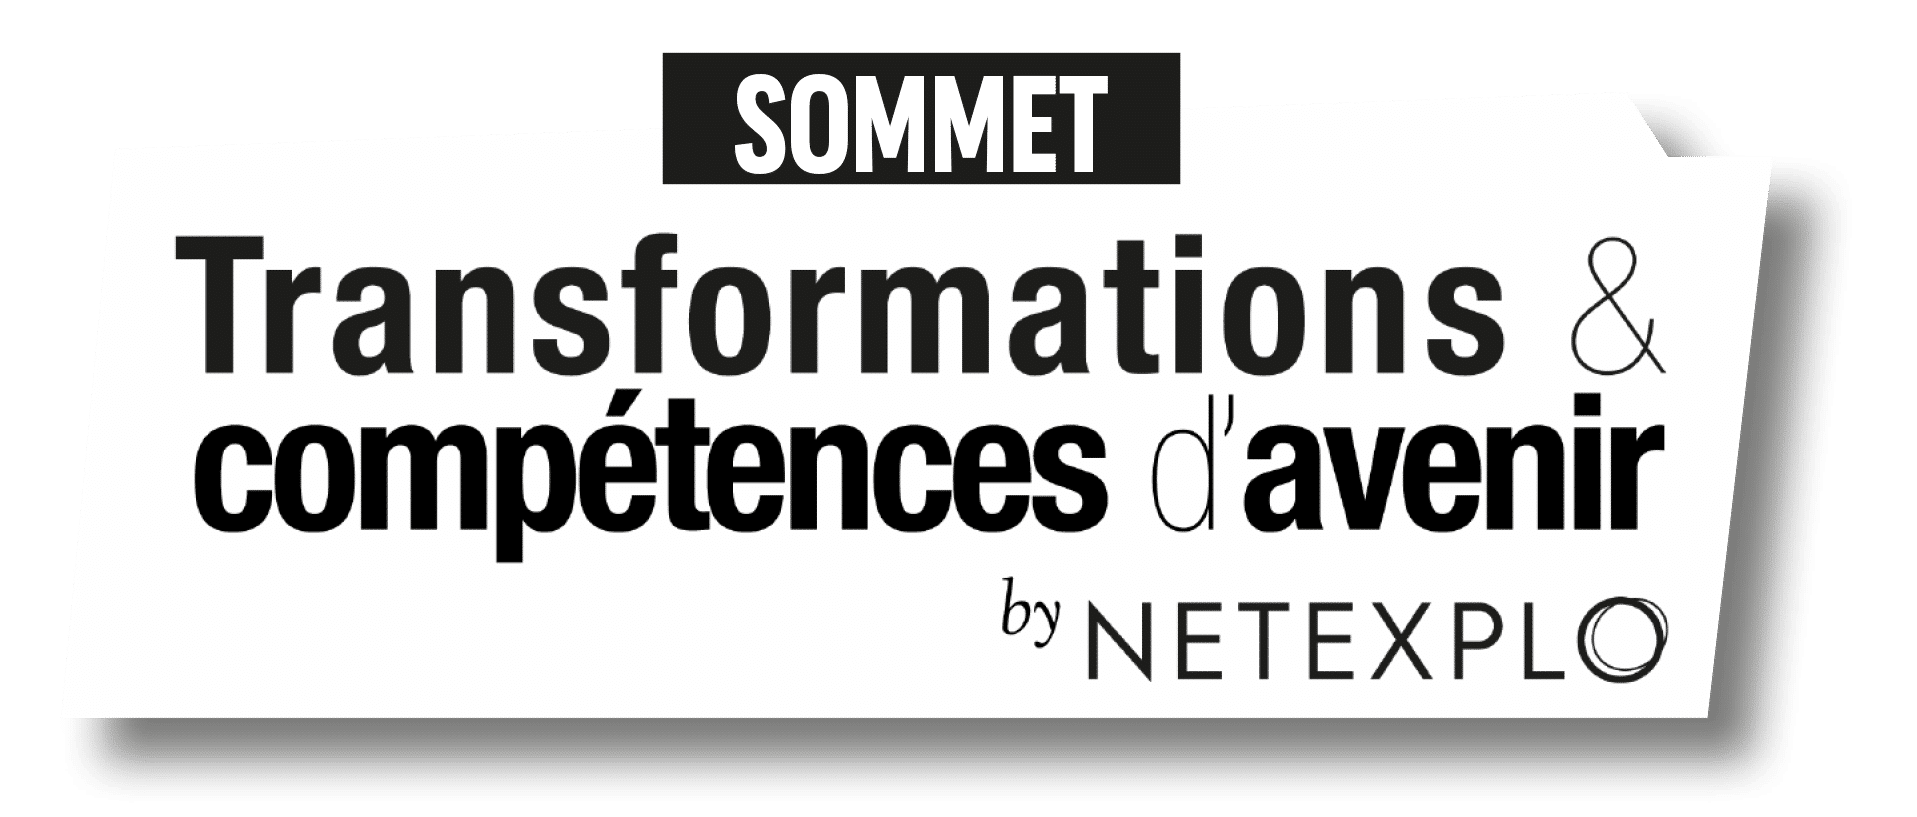 Sommet Transformation Competences d'avenir by Netexplo